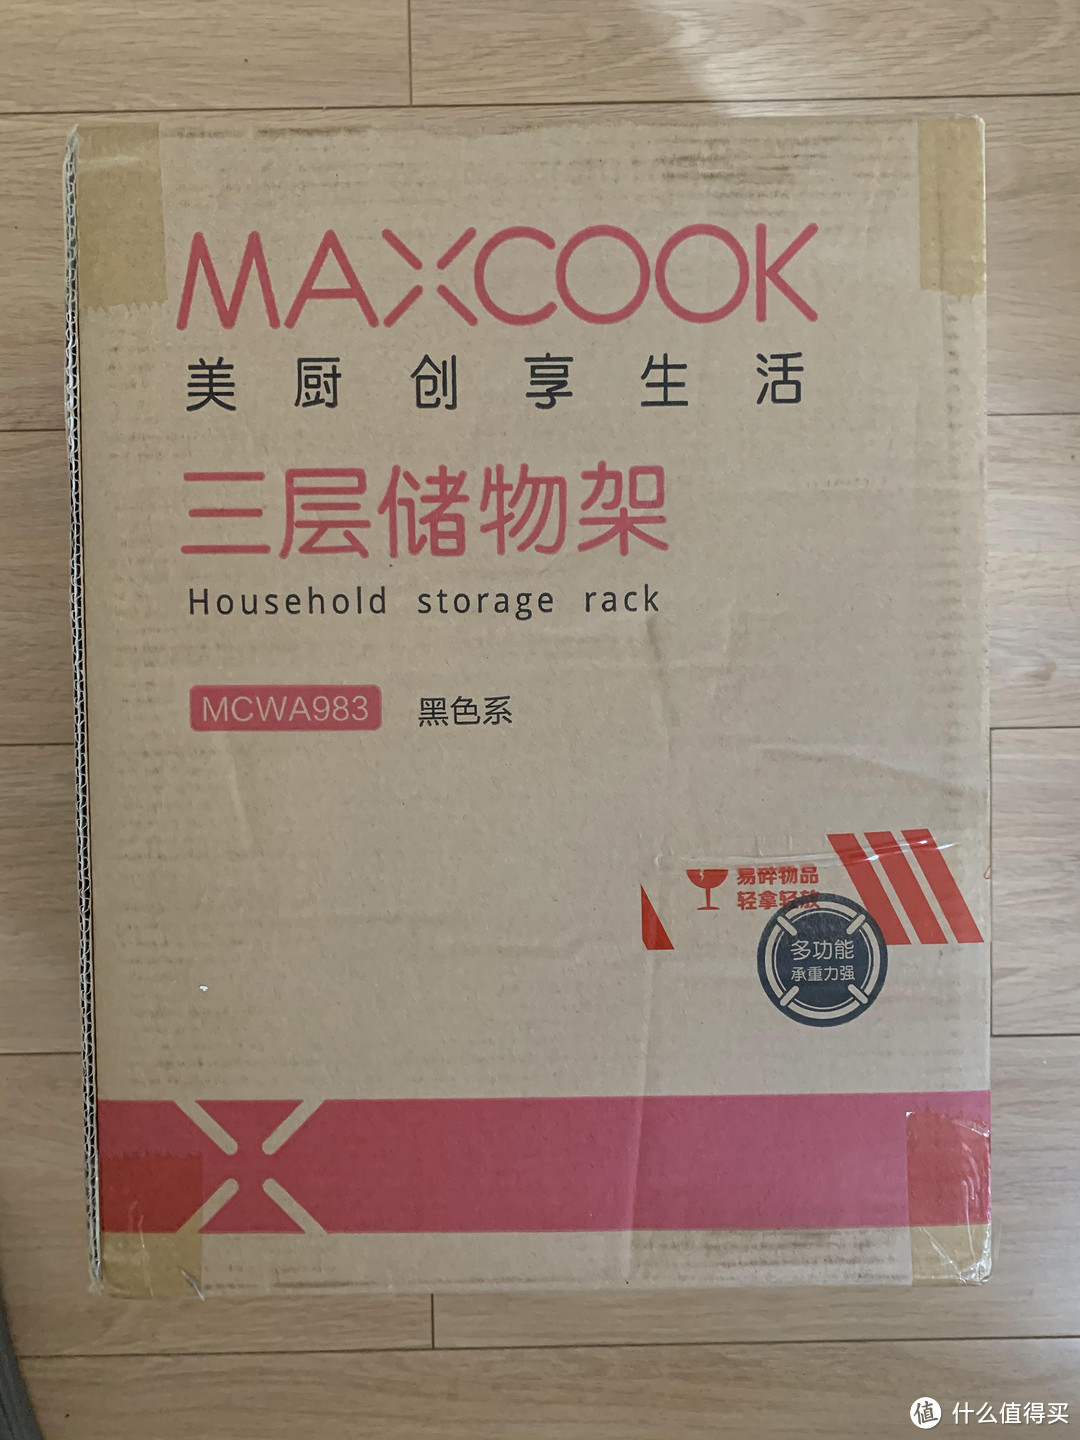 图书馆猿の美厨 maxcook MCWA983 厨房置物架 3层 简单晒